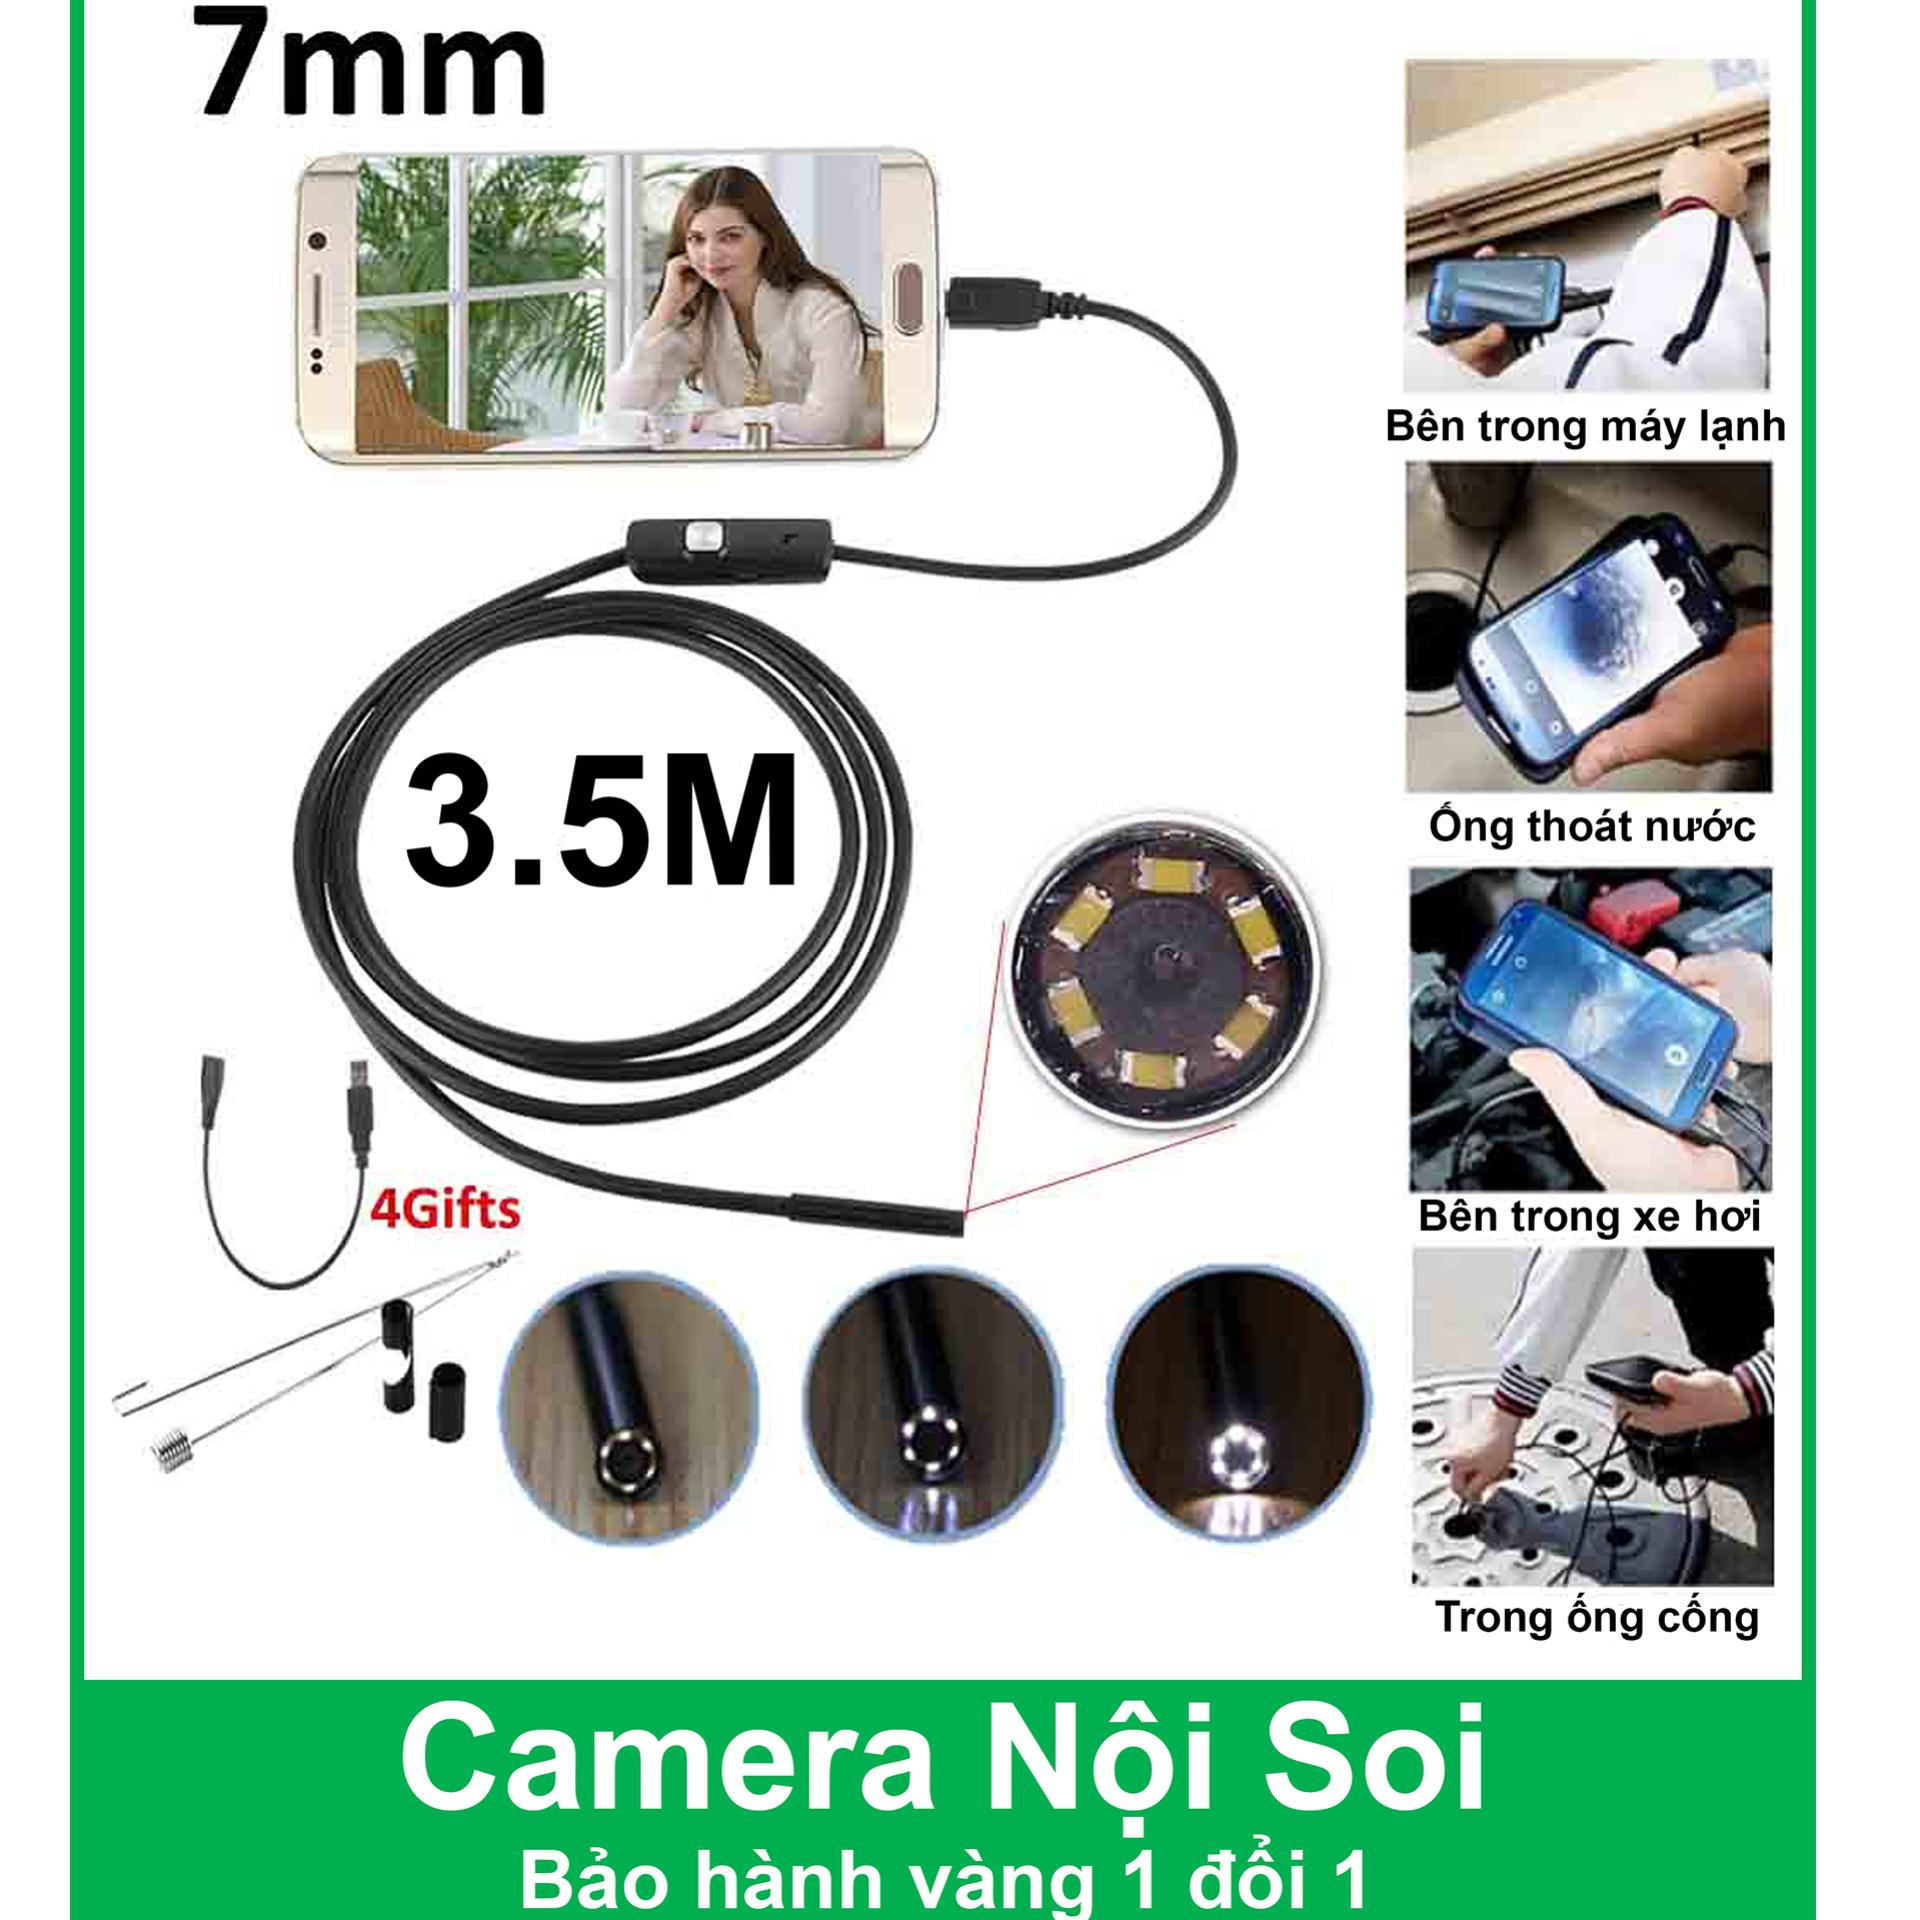 Camera nội soi cho điện thoại và máy tính đường kính 7mm (dài 3.5m) - Chống nước IP67